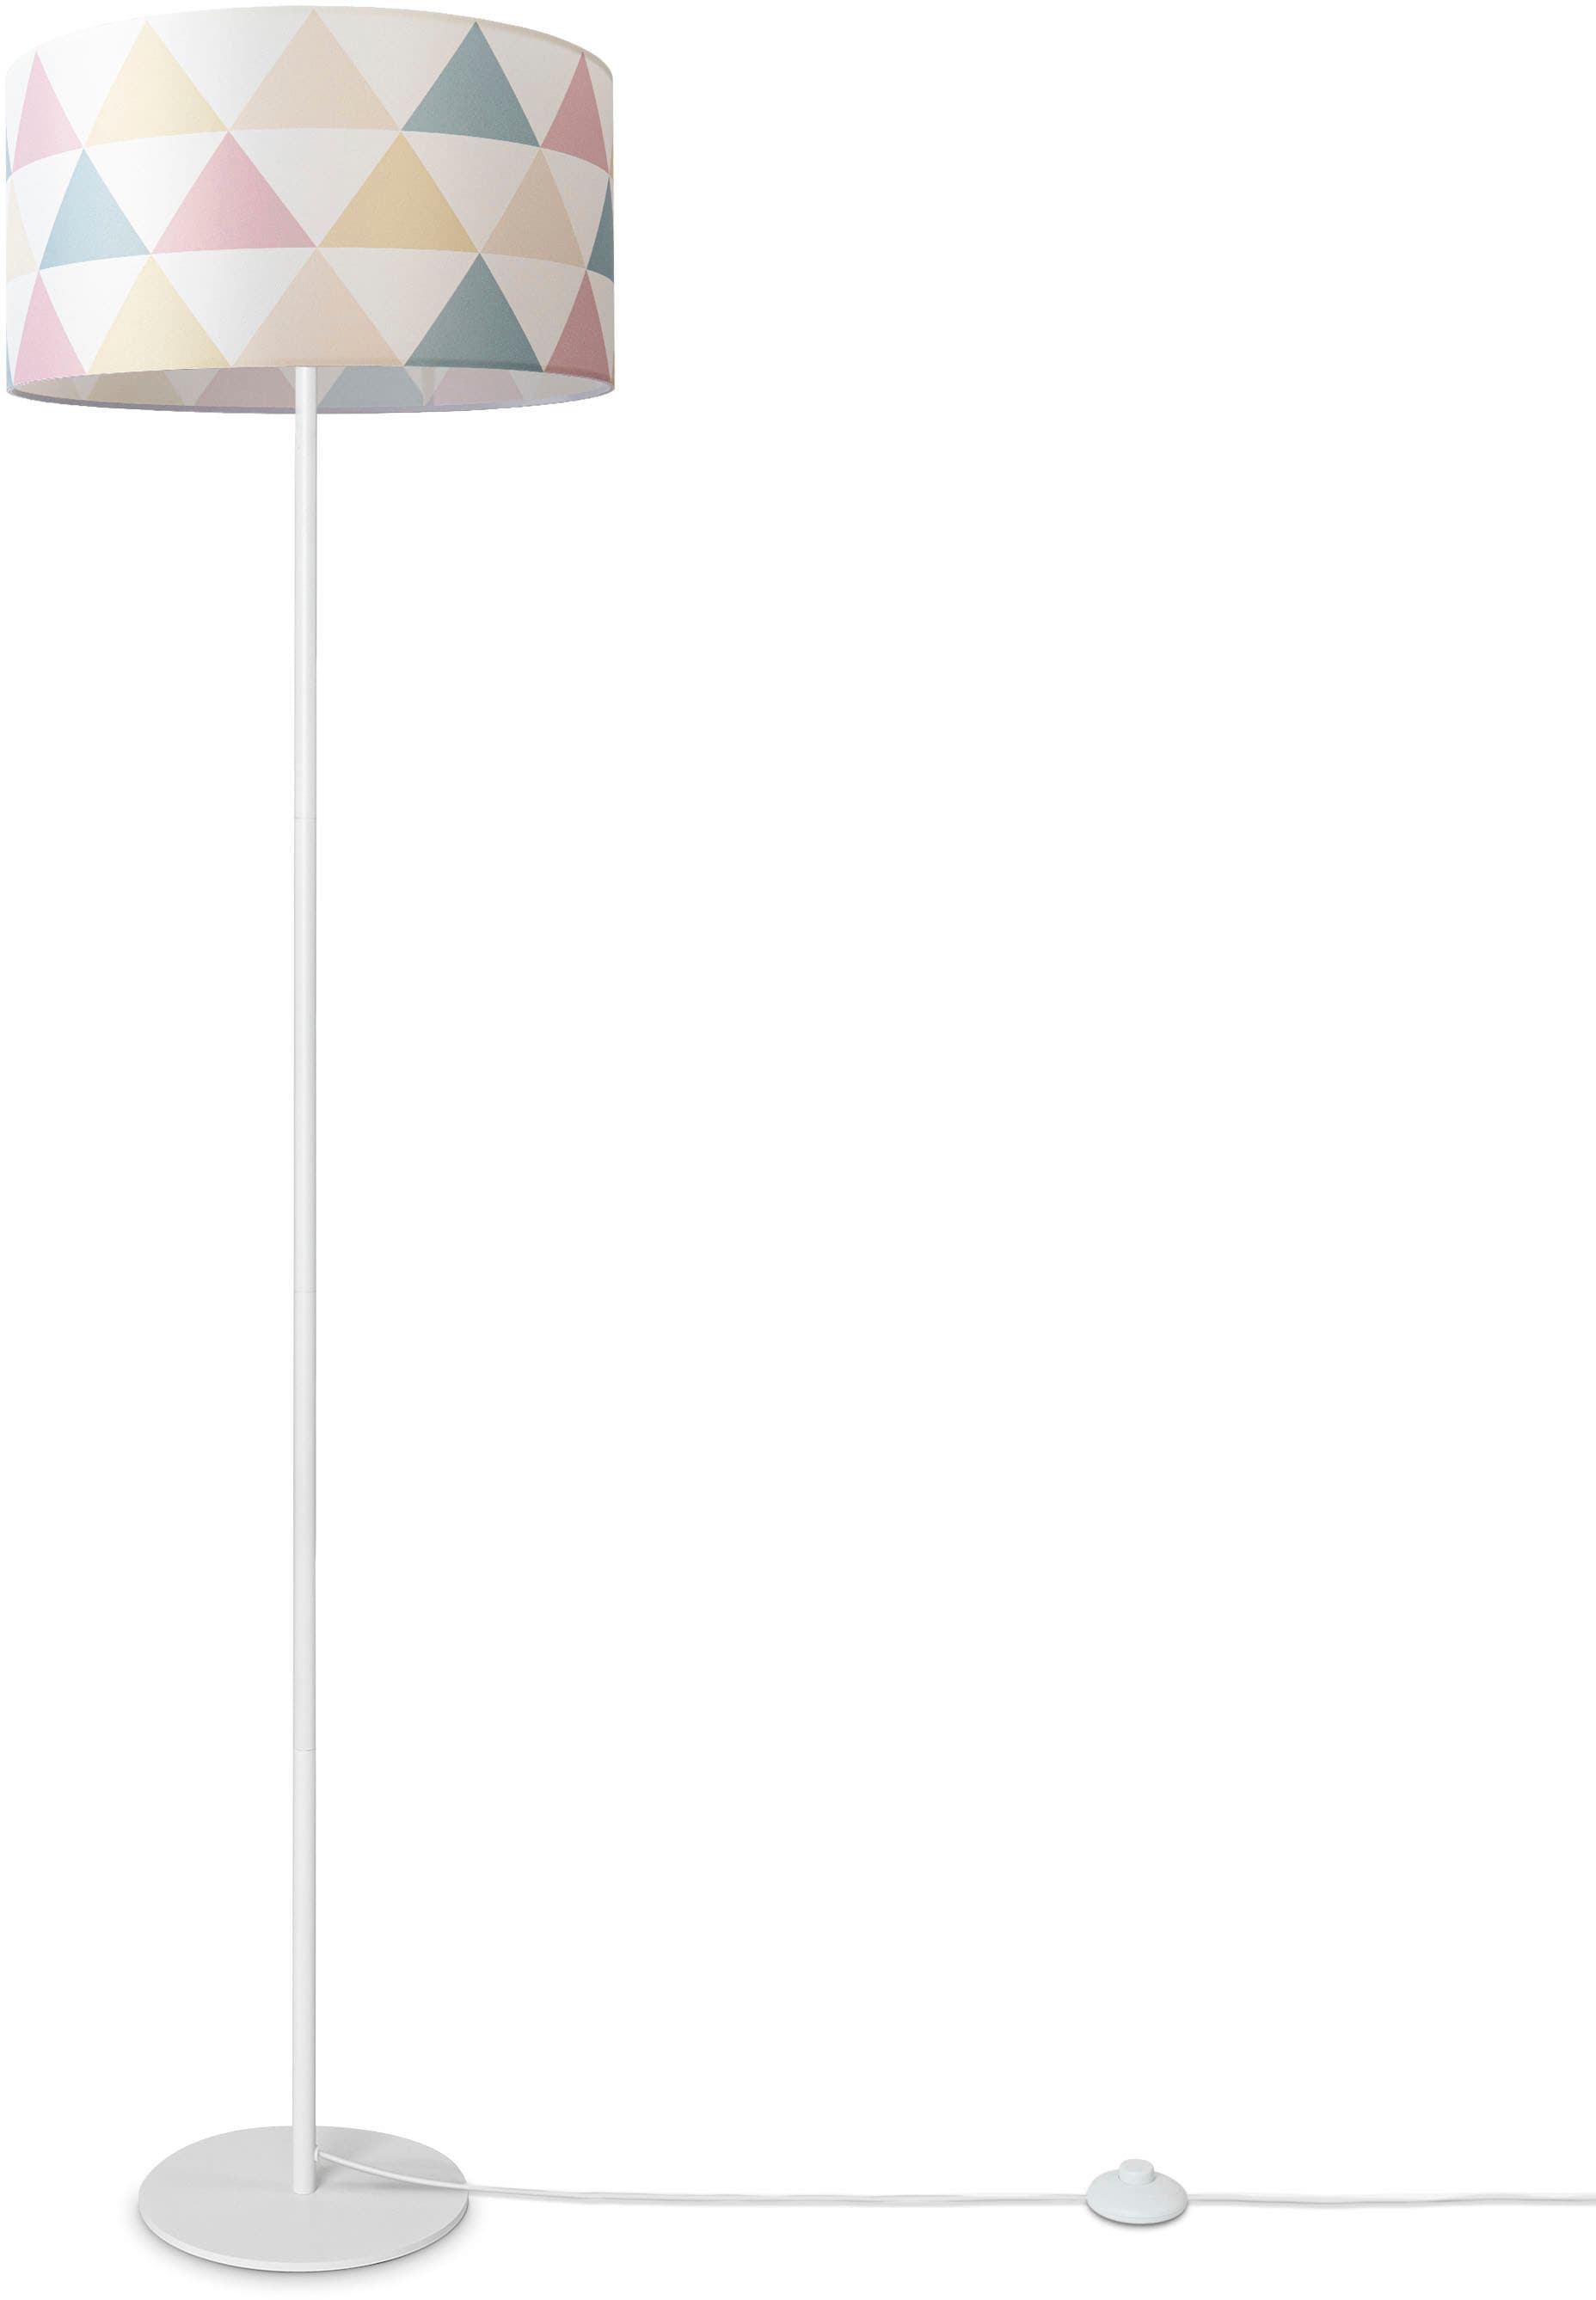 Textil Home online Standleuchte »Luca Stehlampe | Jahren 3 Wohnzimmer Stehlampe XXL Bunt kaufen mit Dreieck Garantie Stoffschirm Delta«, Paco